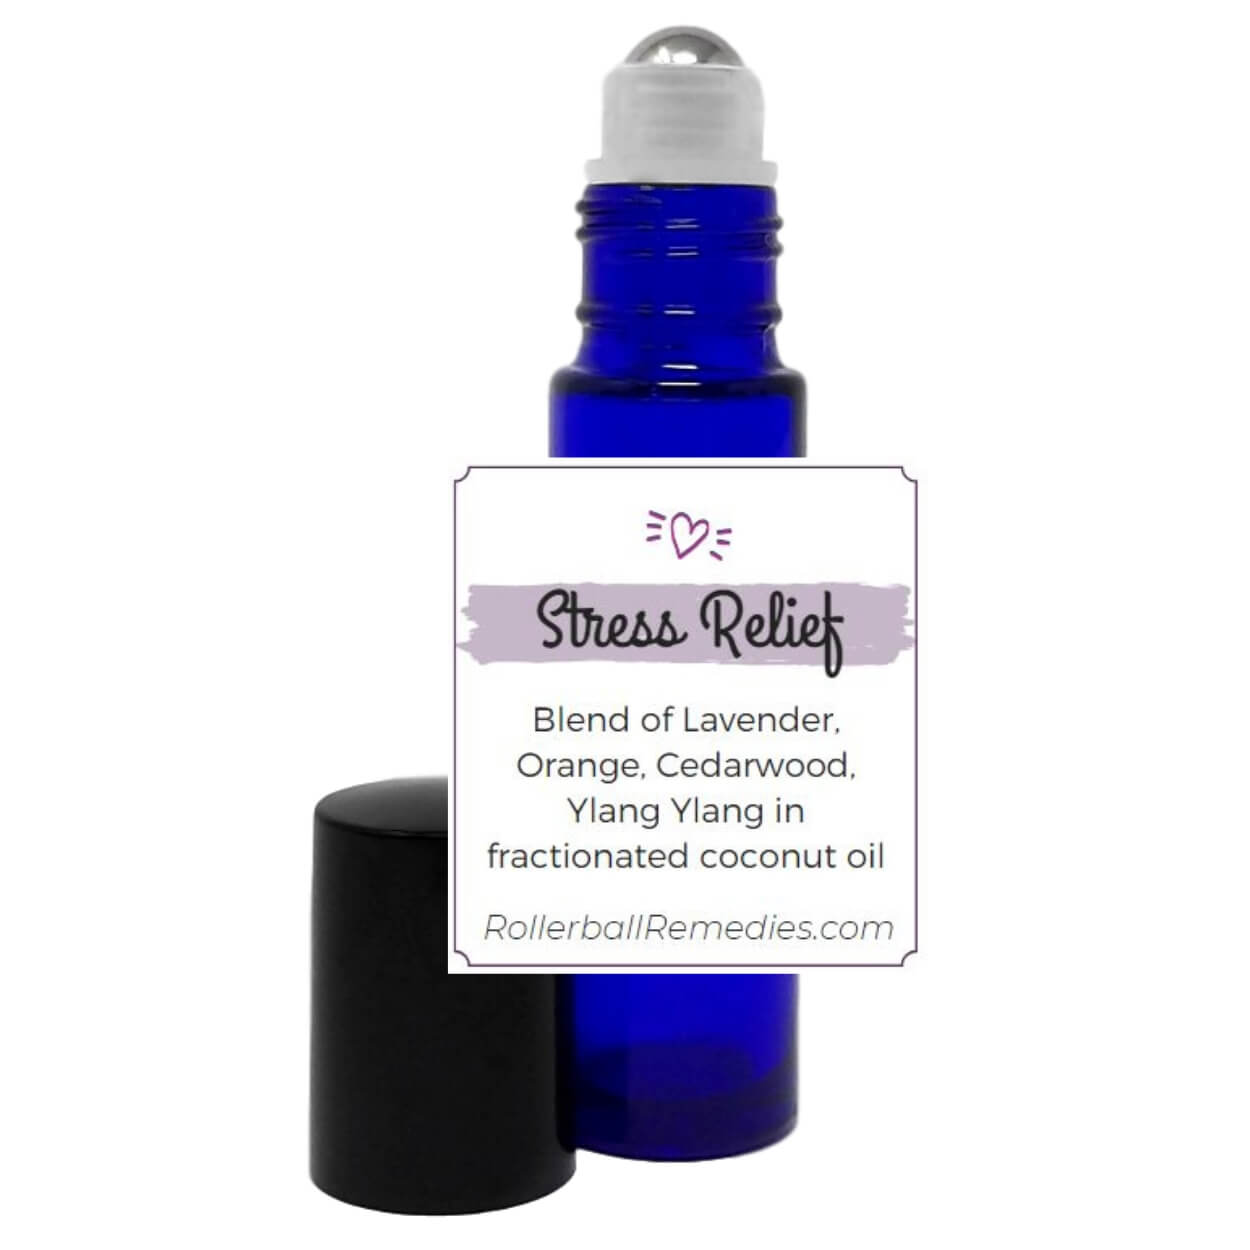 Stress Relief Essential Oil Roller Blend - 10 ml Roller Bottle with Lavender, Orange, Ylang Ylang, and Cedarwood